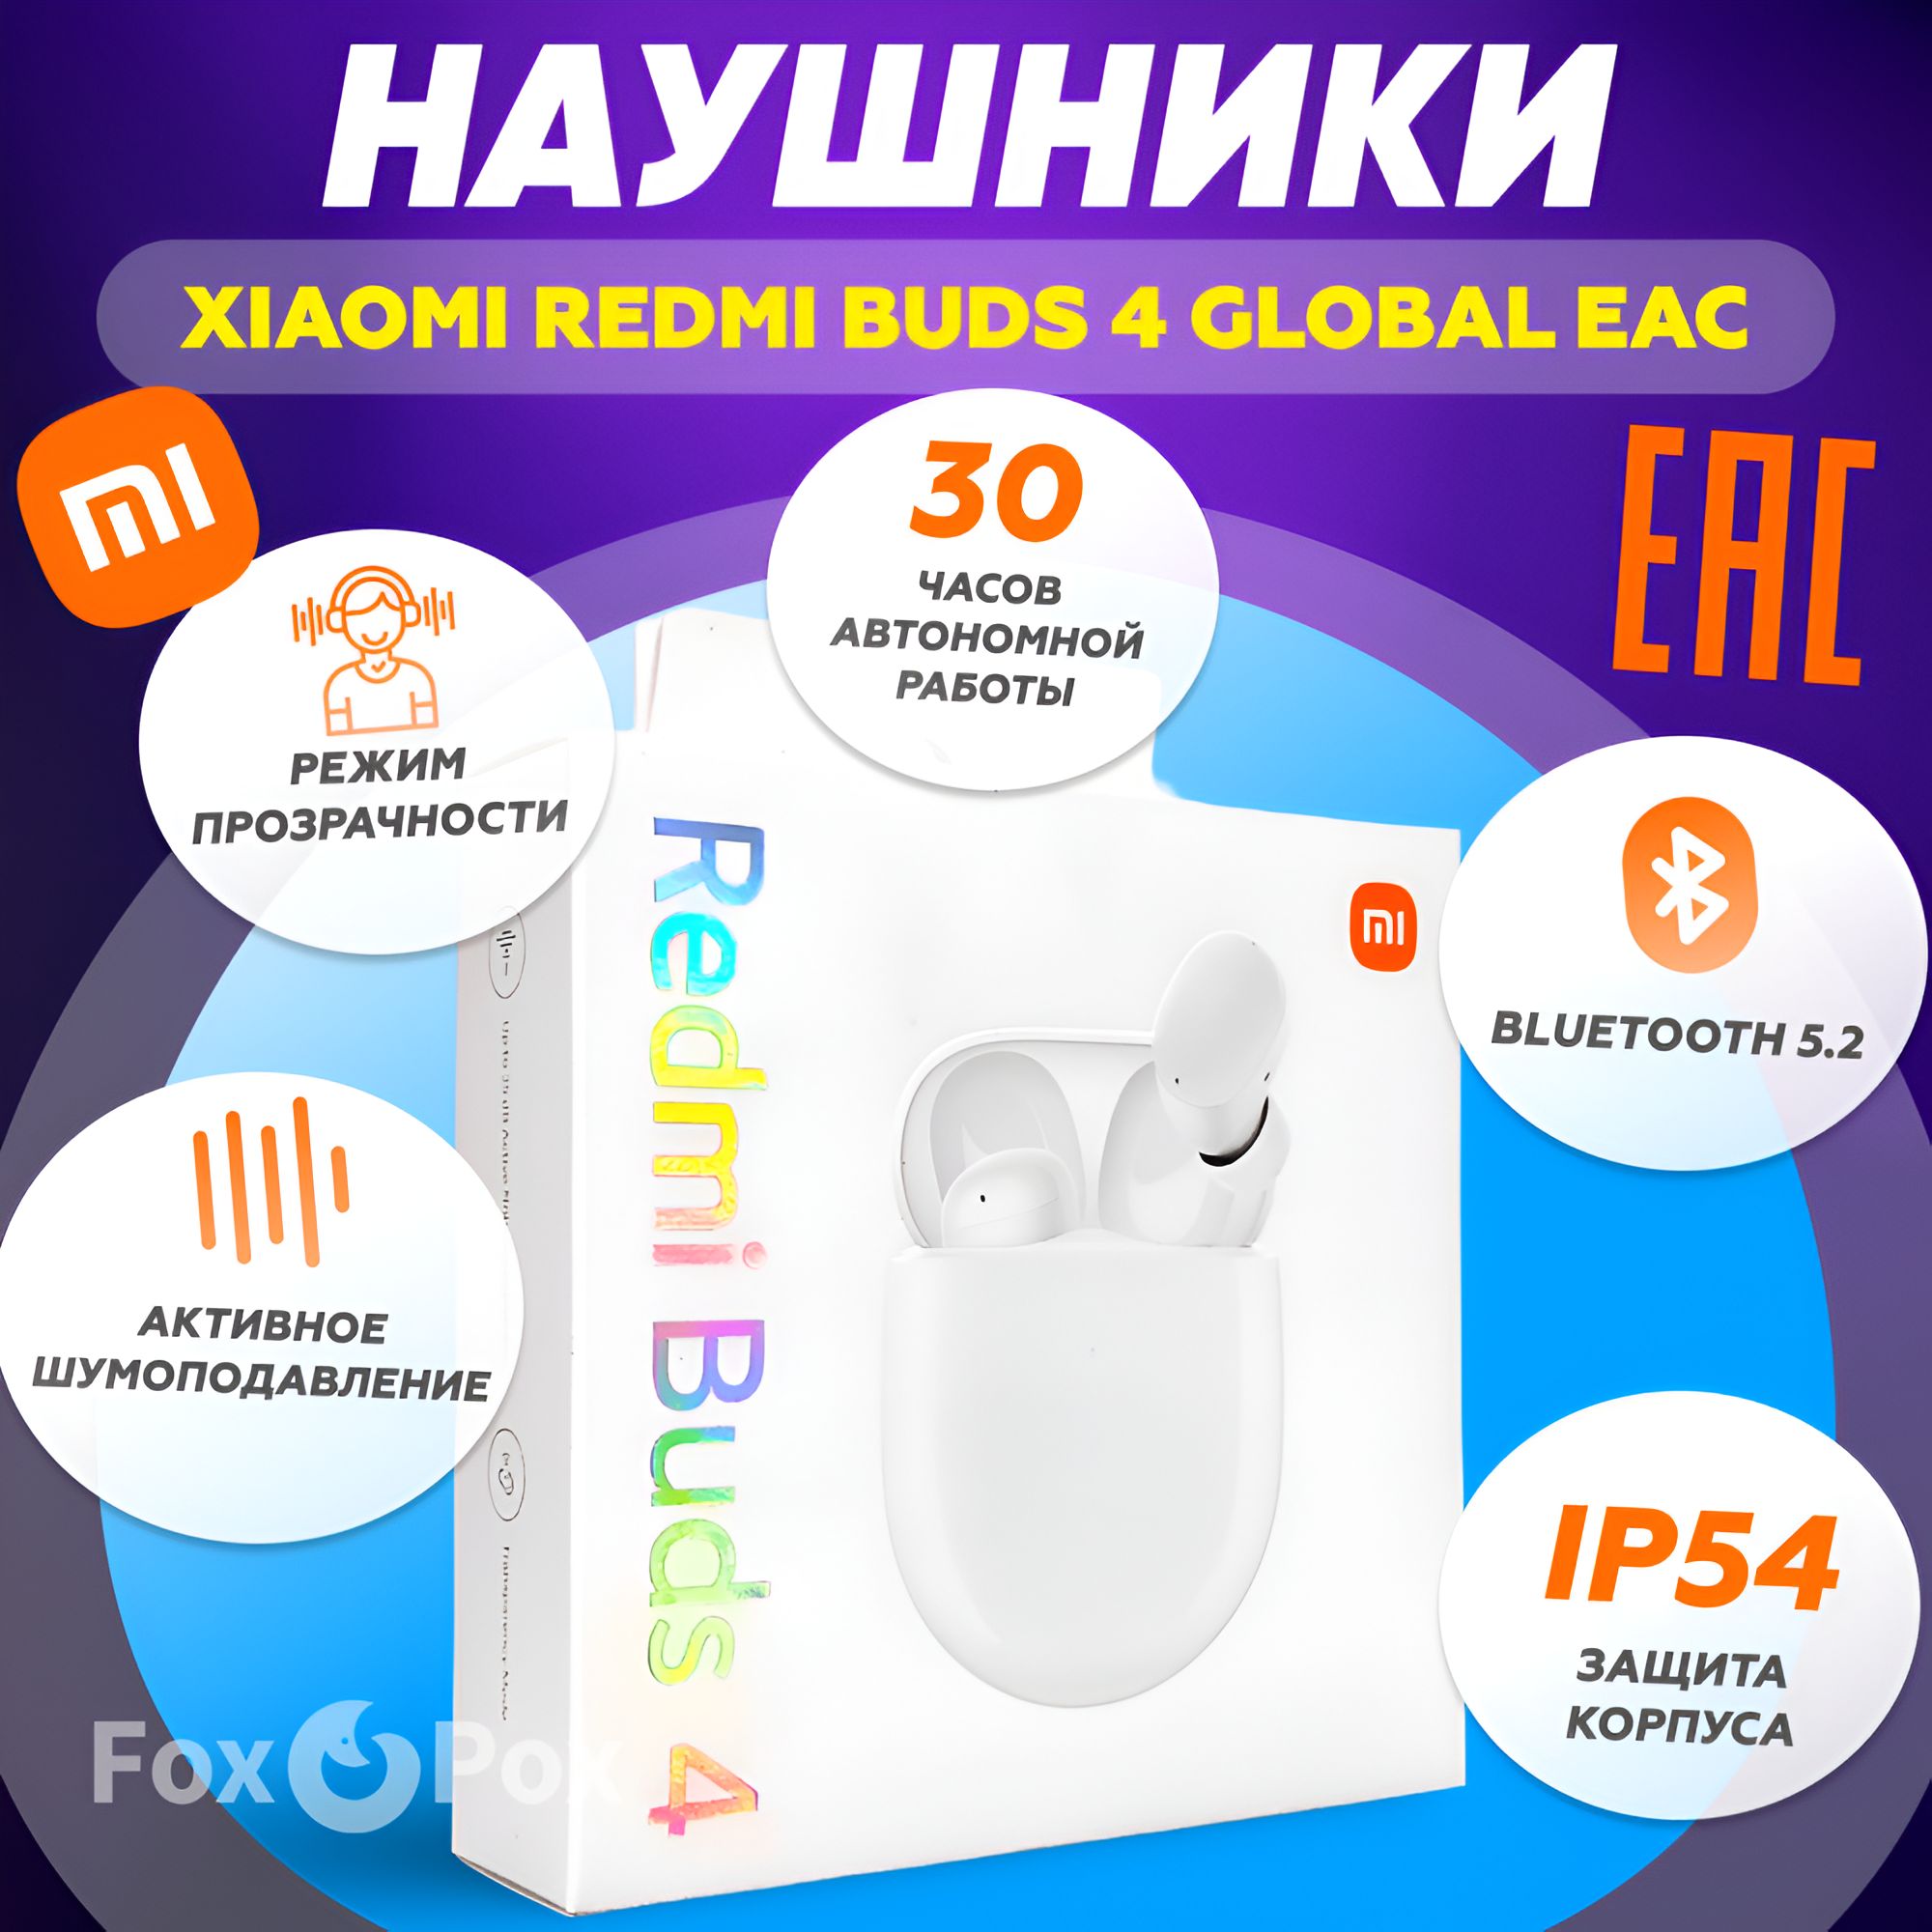 XiaomiRedmiBuds4GlobalEACБеспроводныеBluetoothнаушники-вкладышисмикрофономишумоподавлениемM2137E1(BHR5846GL),белые